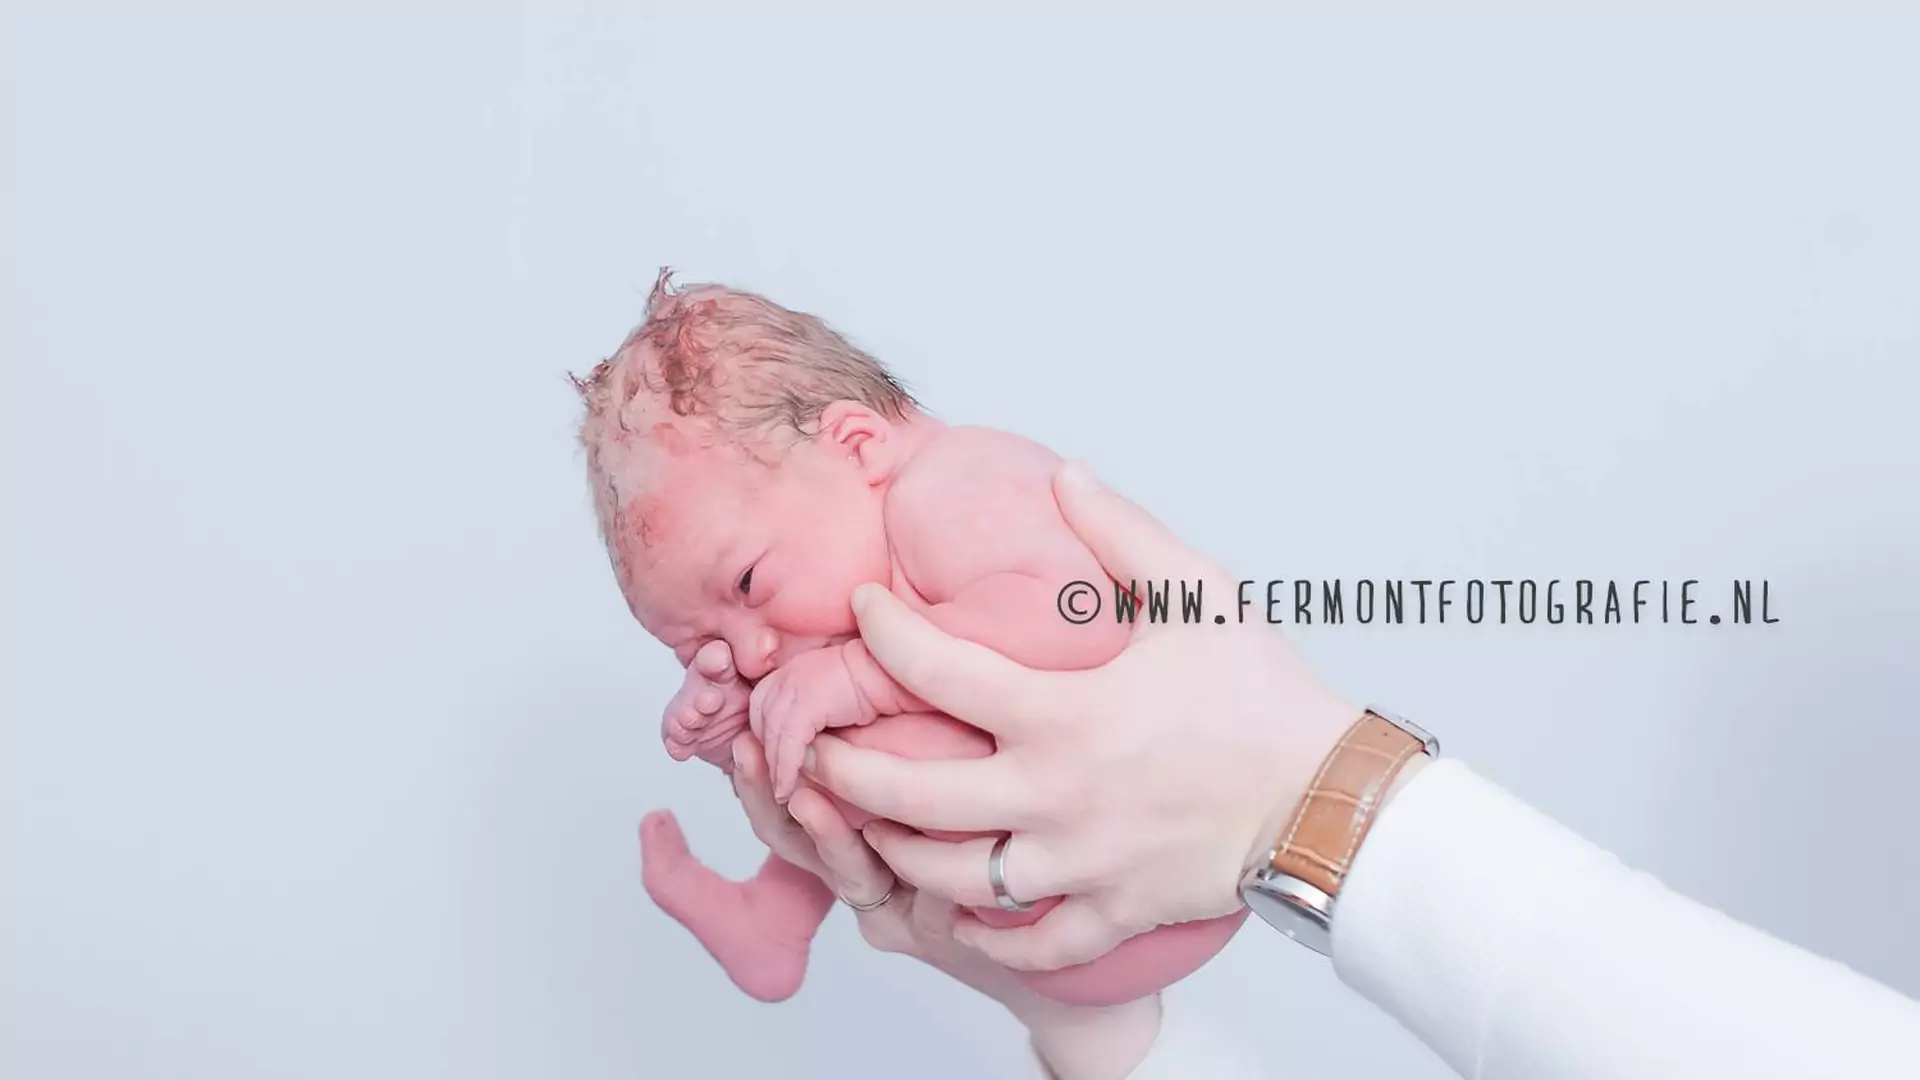 Nowy pomysł na fotografowanie noworodków - w pozycjach prenatalnych. Naturalne i piękne zdjęcia